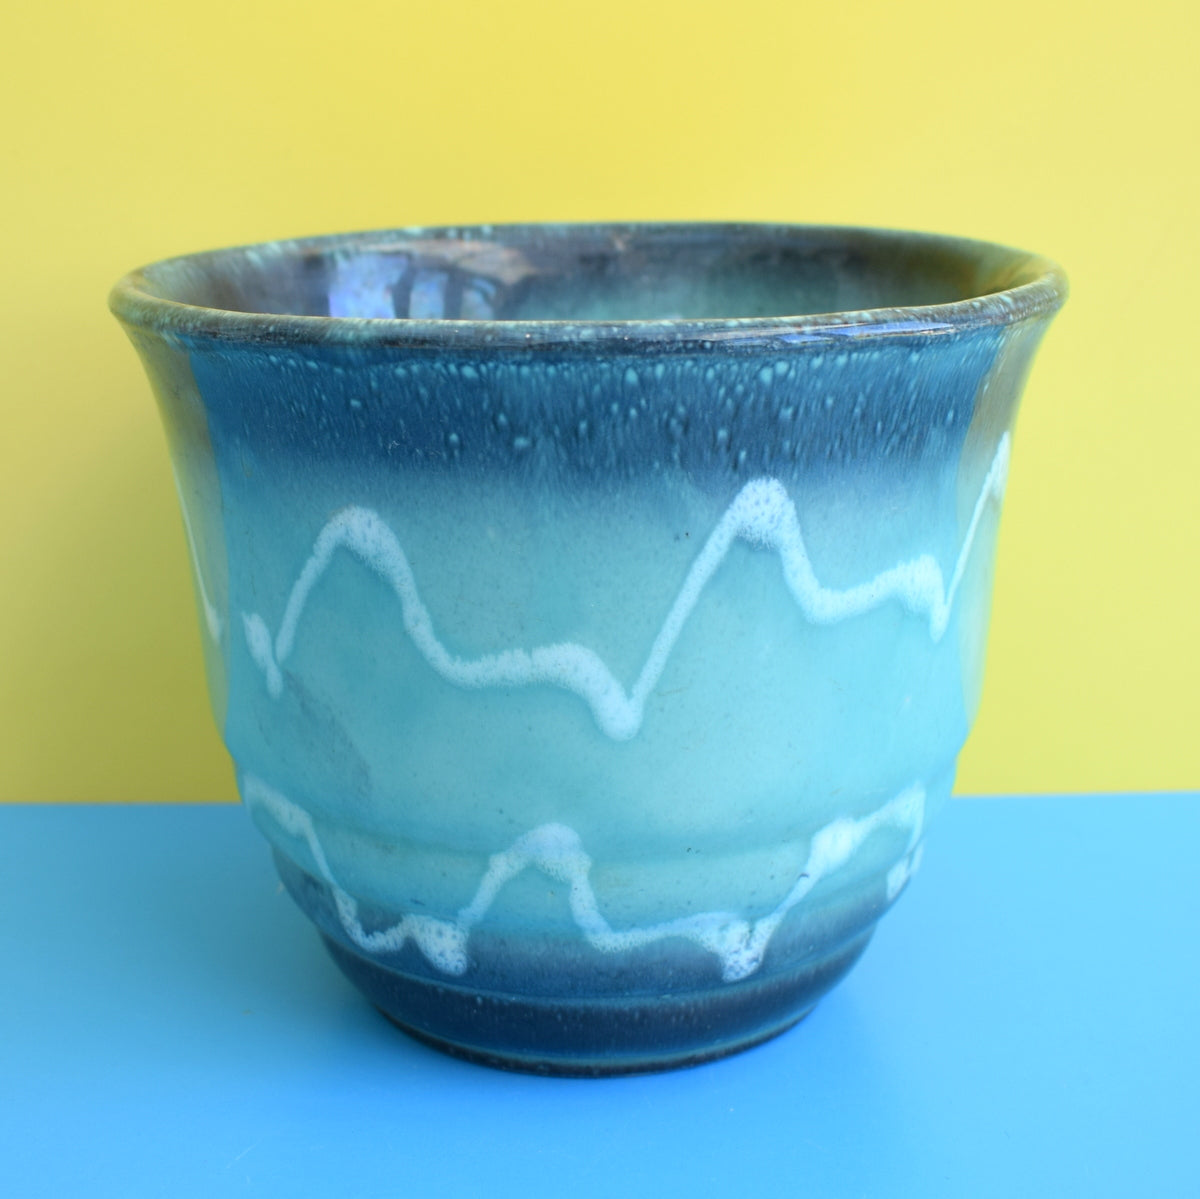 Vintage 1960s Ceramic Plant Pot - Turquoise